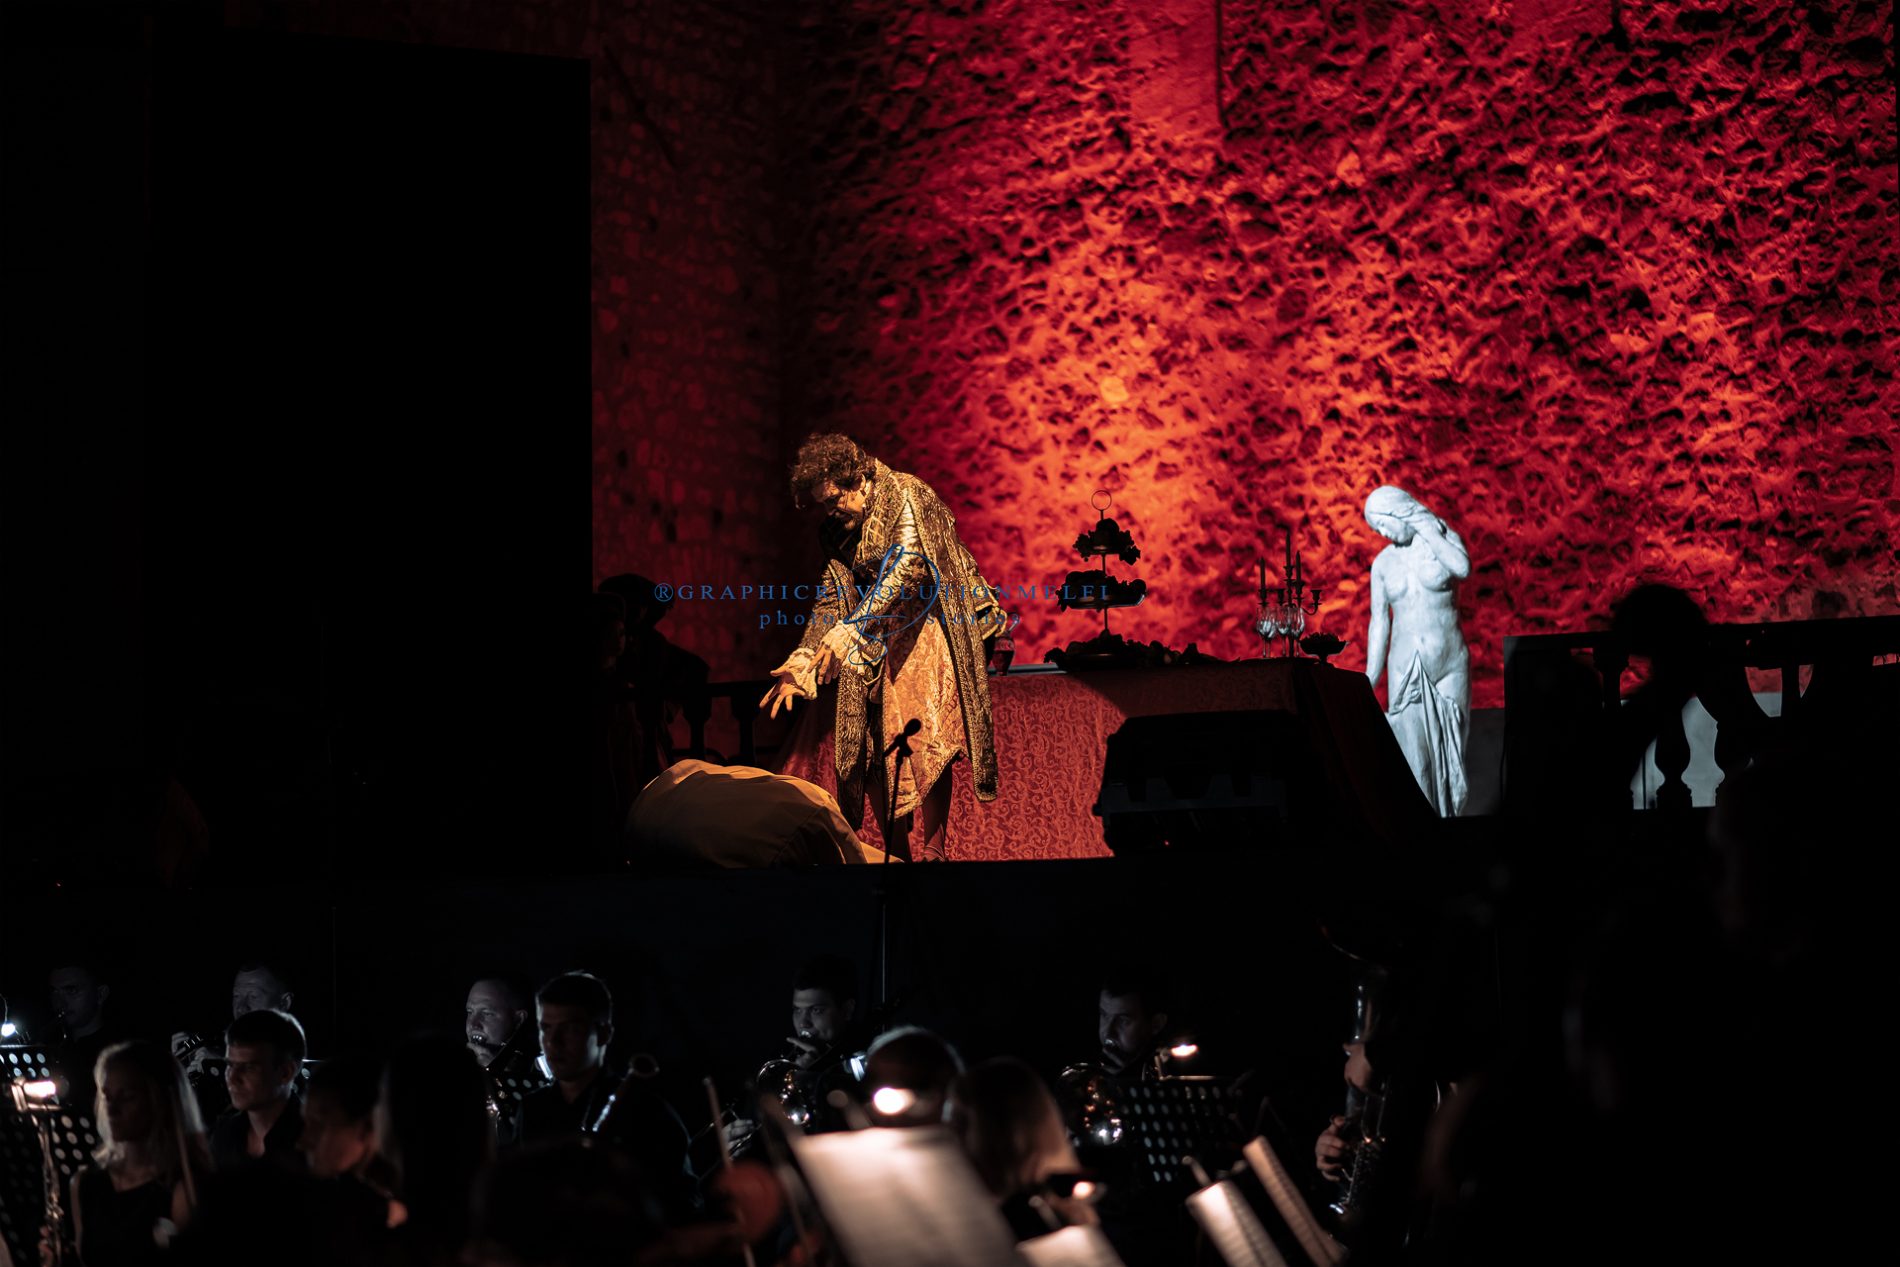 L'opera i Rigoletto al Castello di Melfi giuseppe verdi la camerata delle arti fotografo teatro